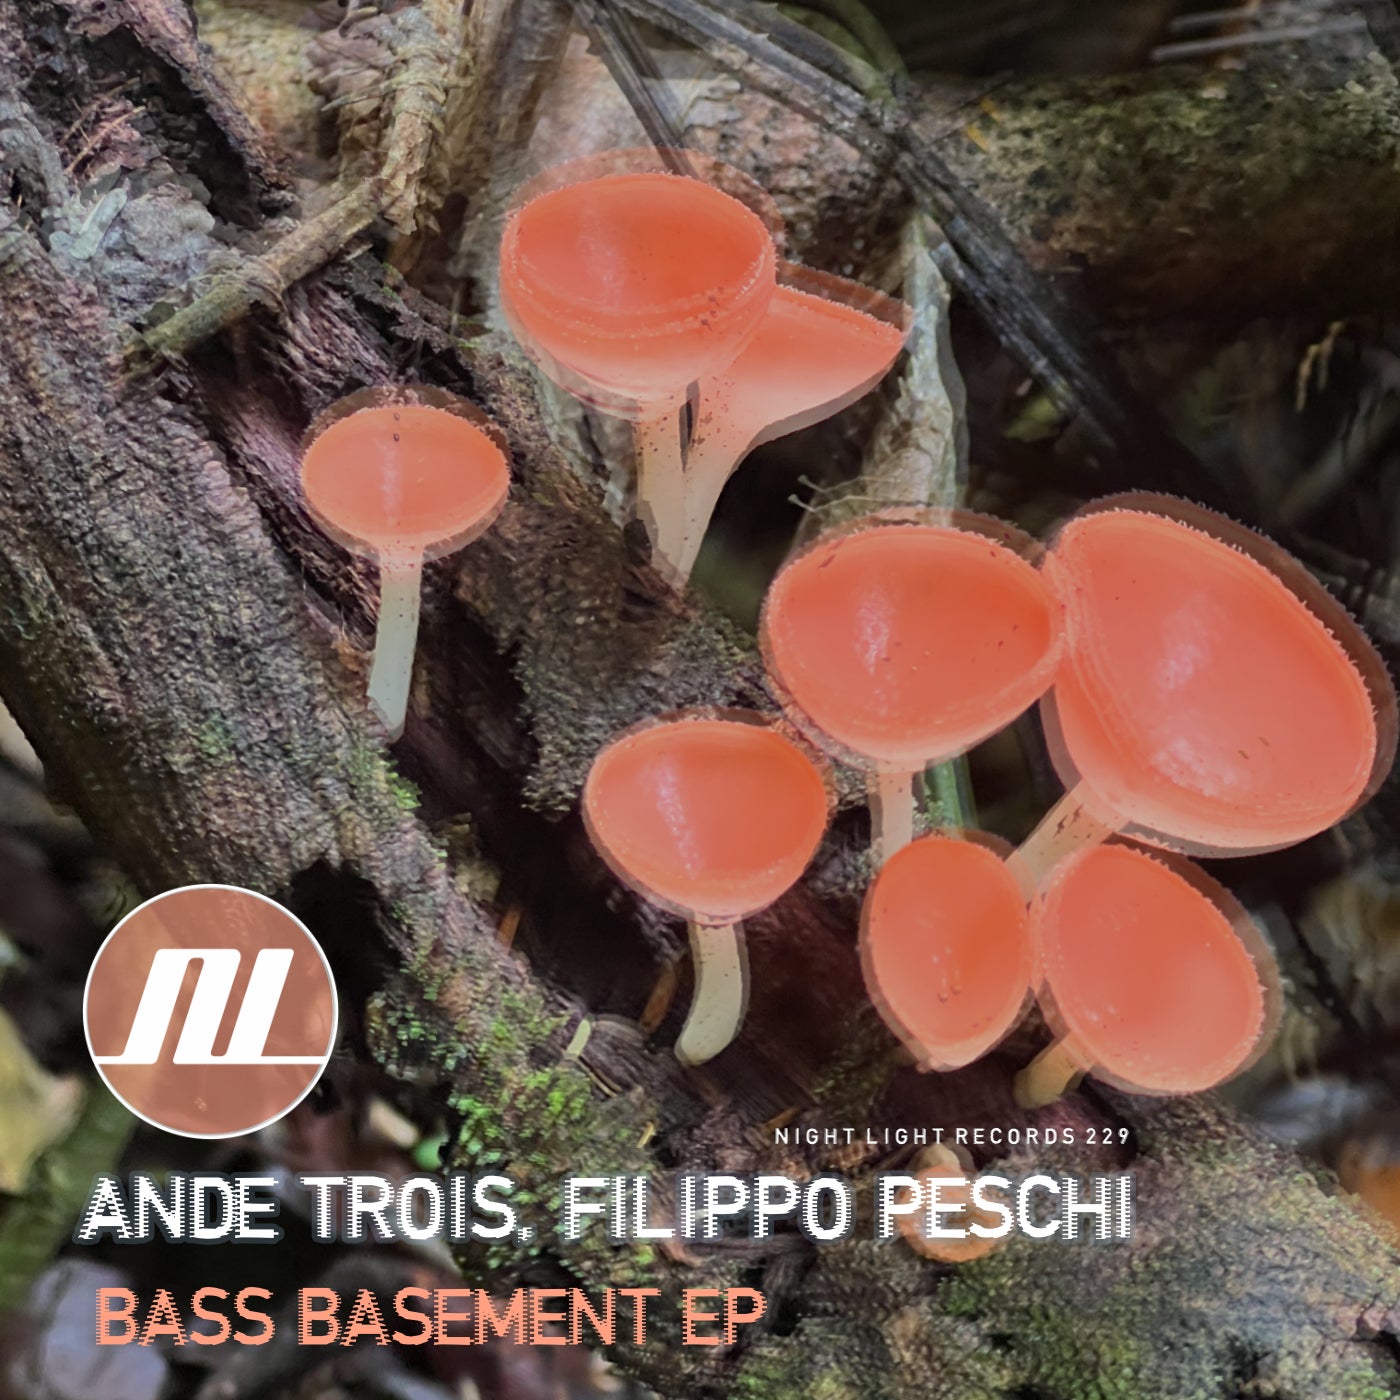 Bass Basement EP